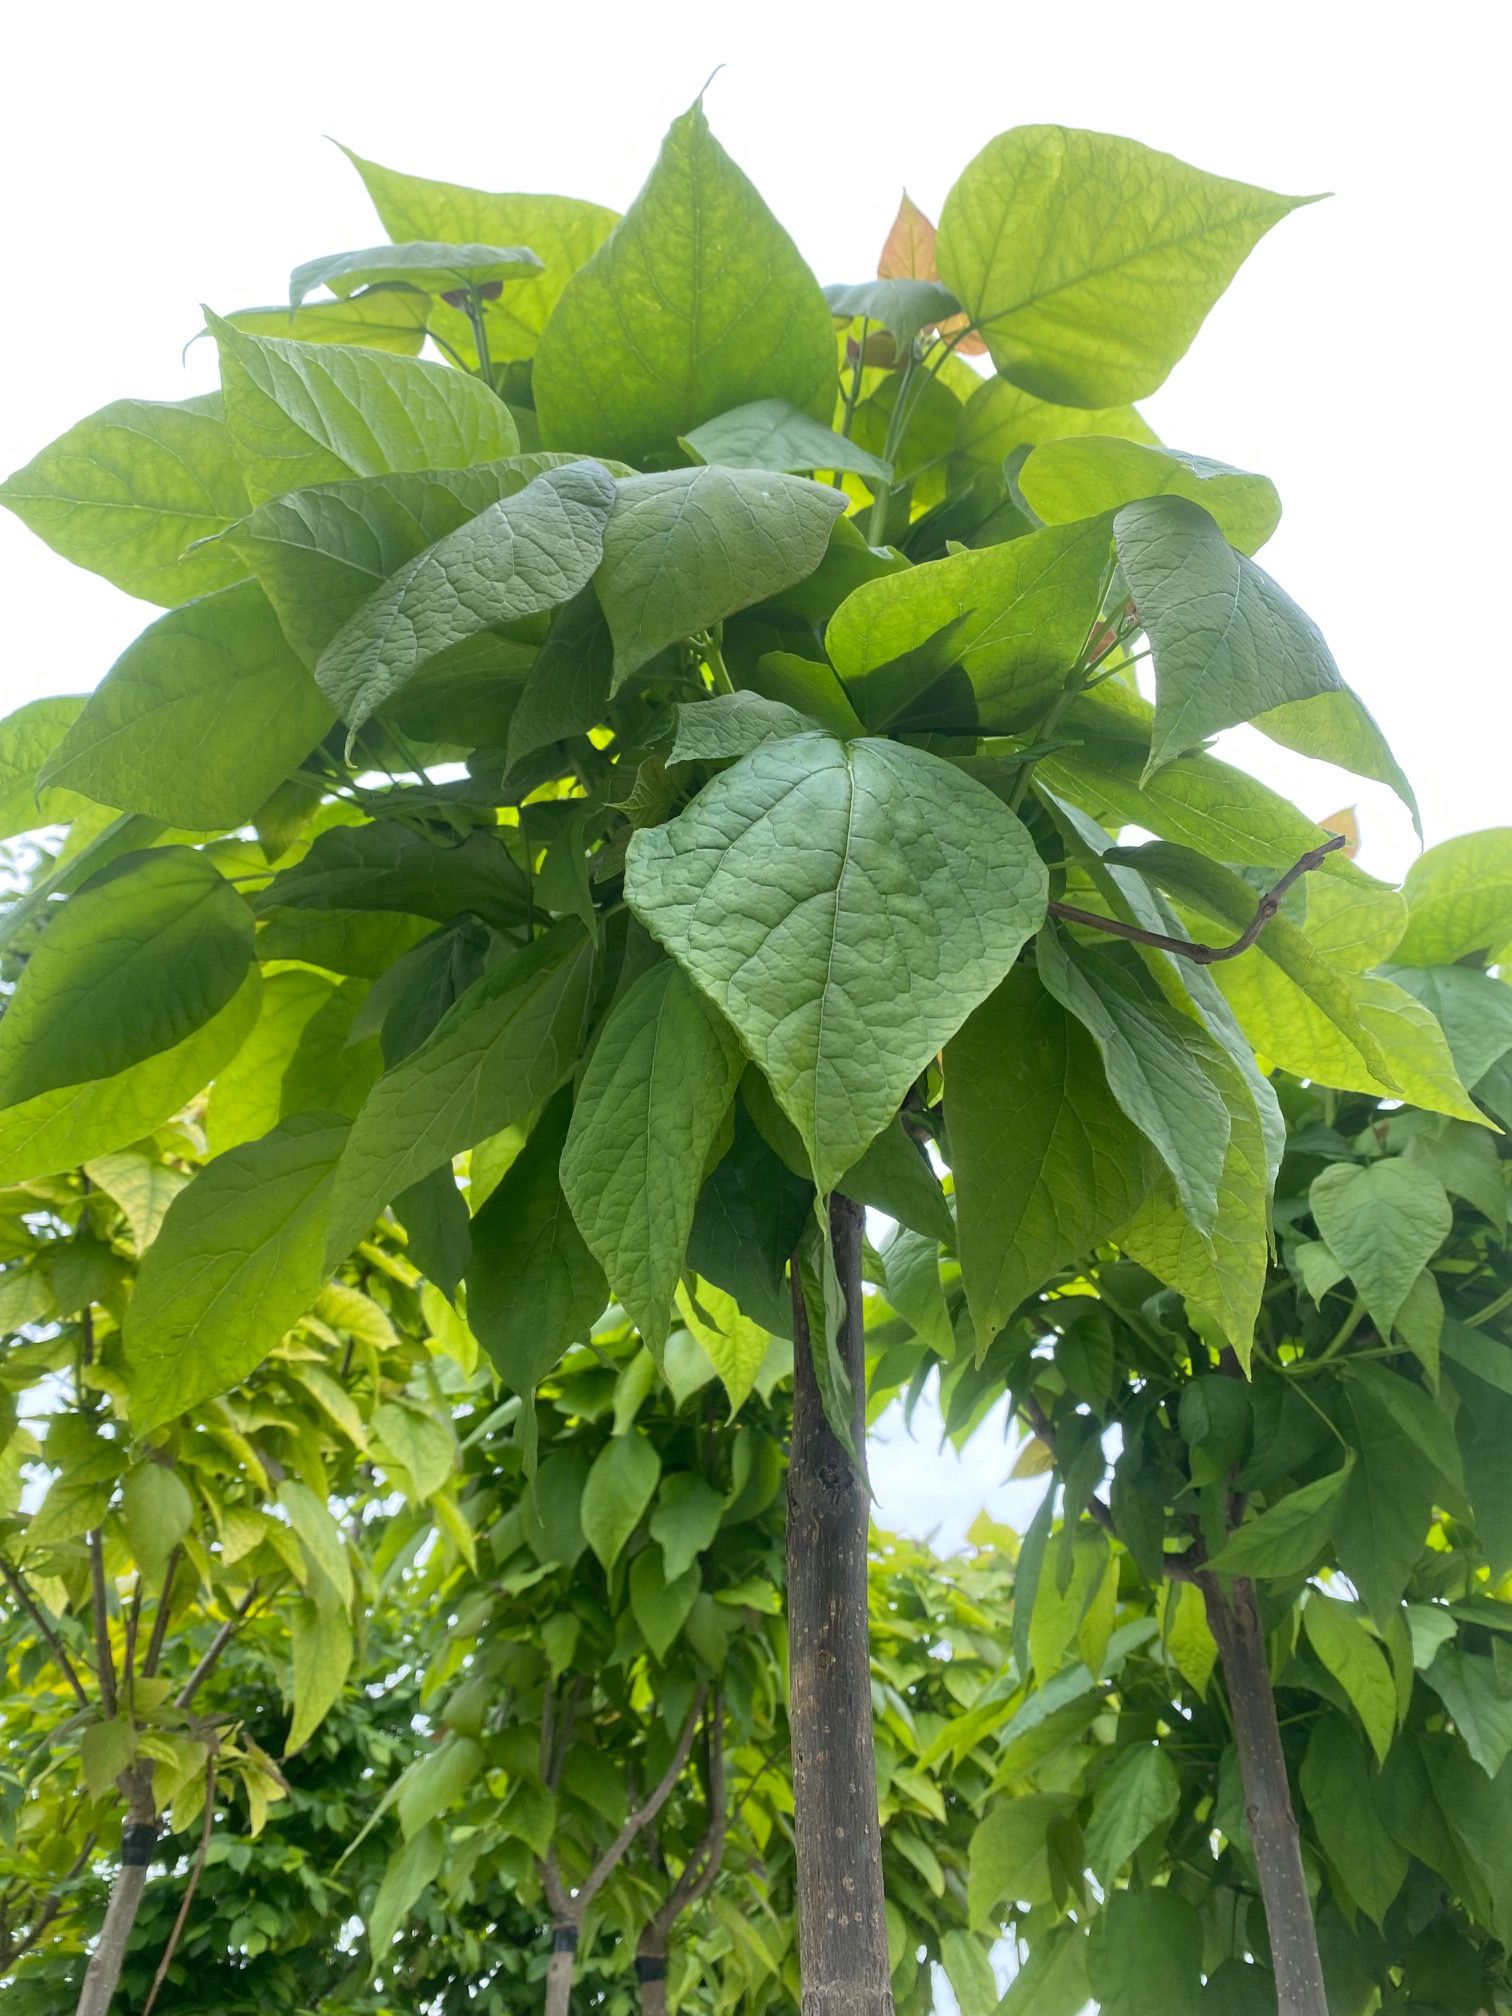 Trompetenbaum - Catalpa bignonioides 'Nana' - Kugelförmiger Baum